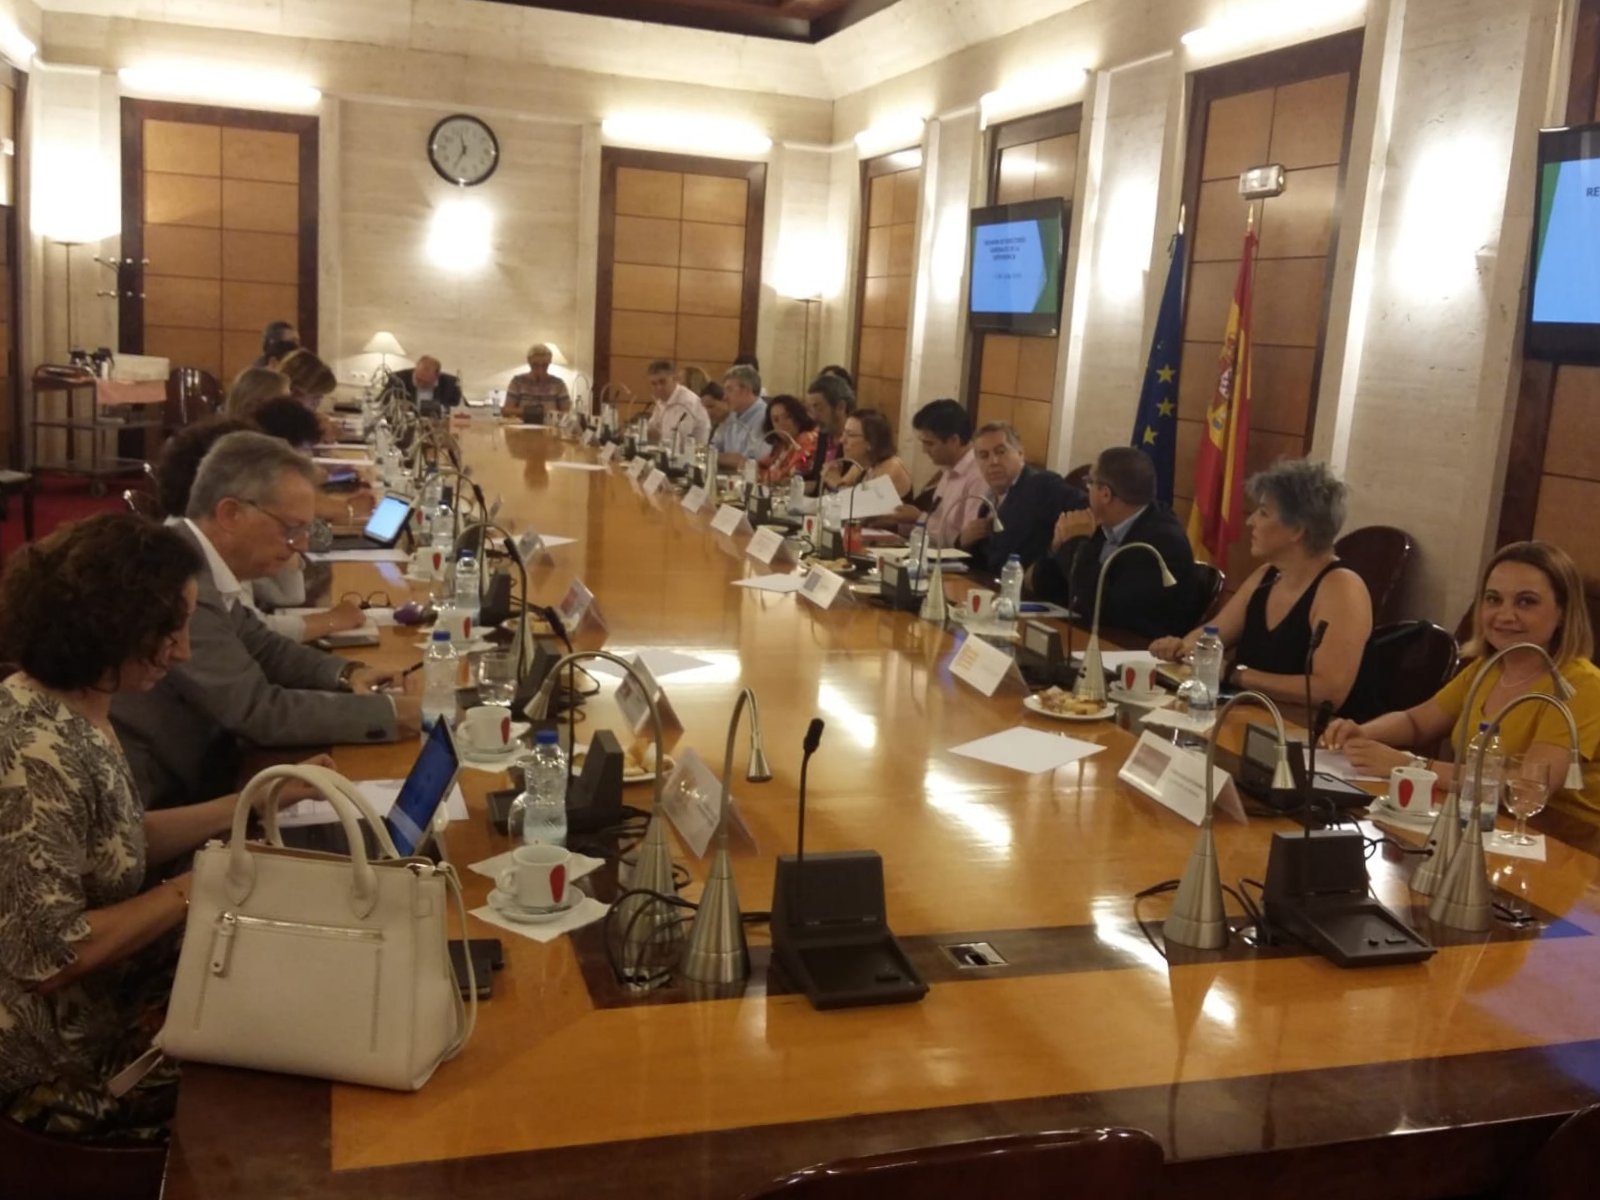 Reunión de los directores generales del Sistema para la Autonomía y Atención a la Dependencia (SAAD)